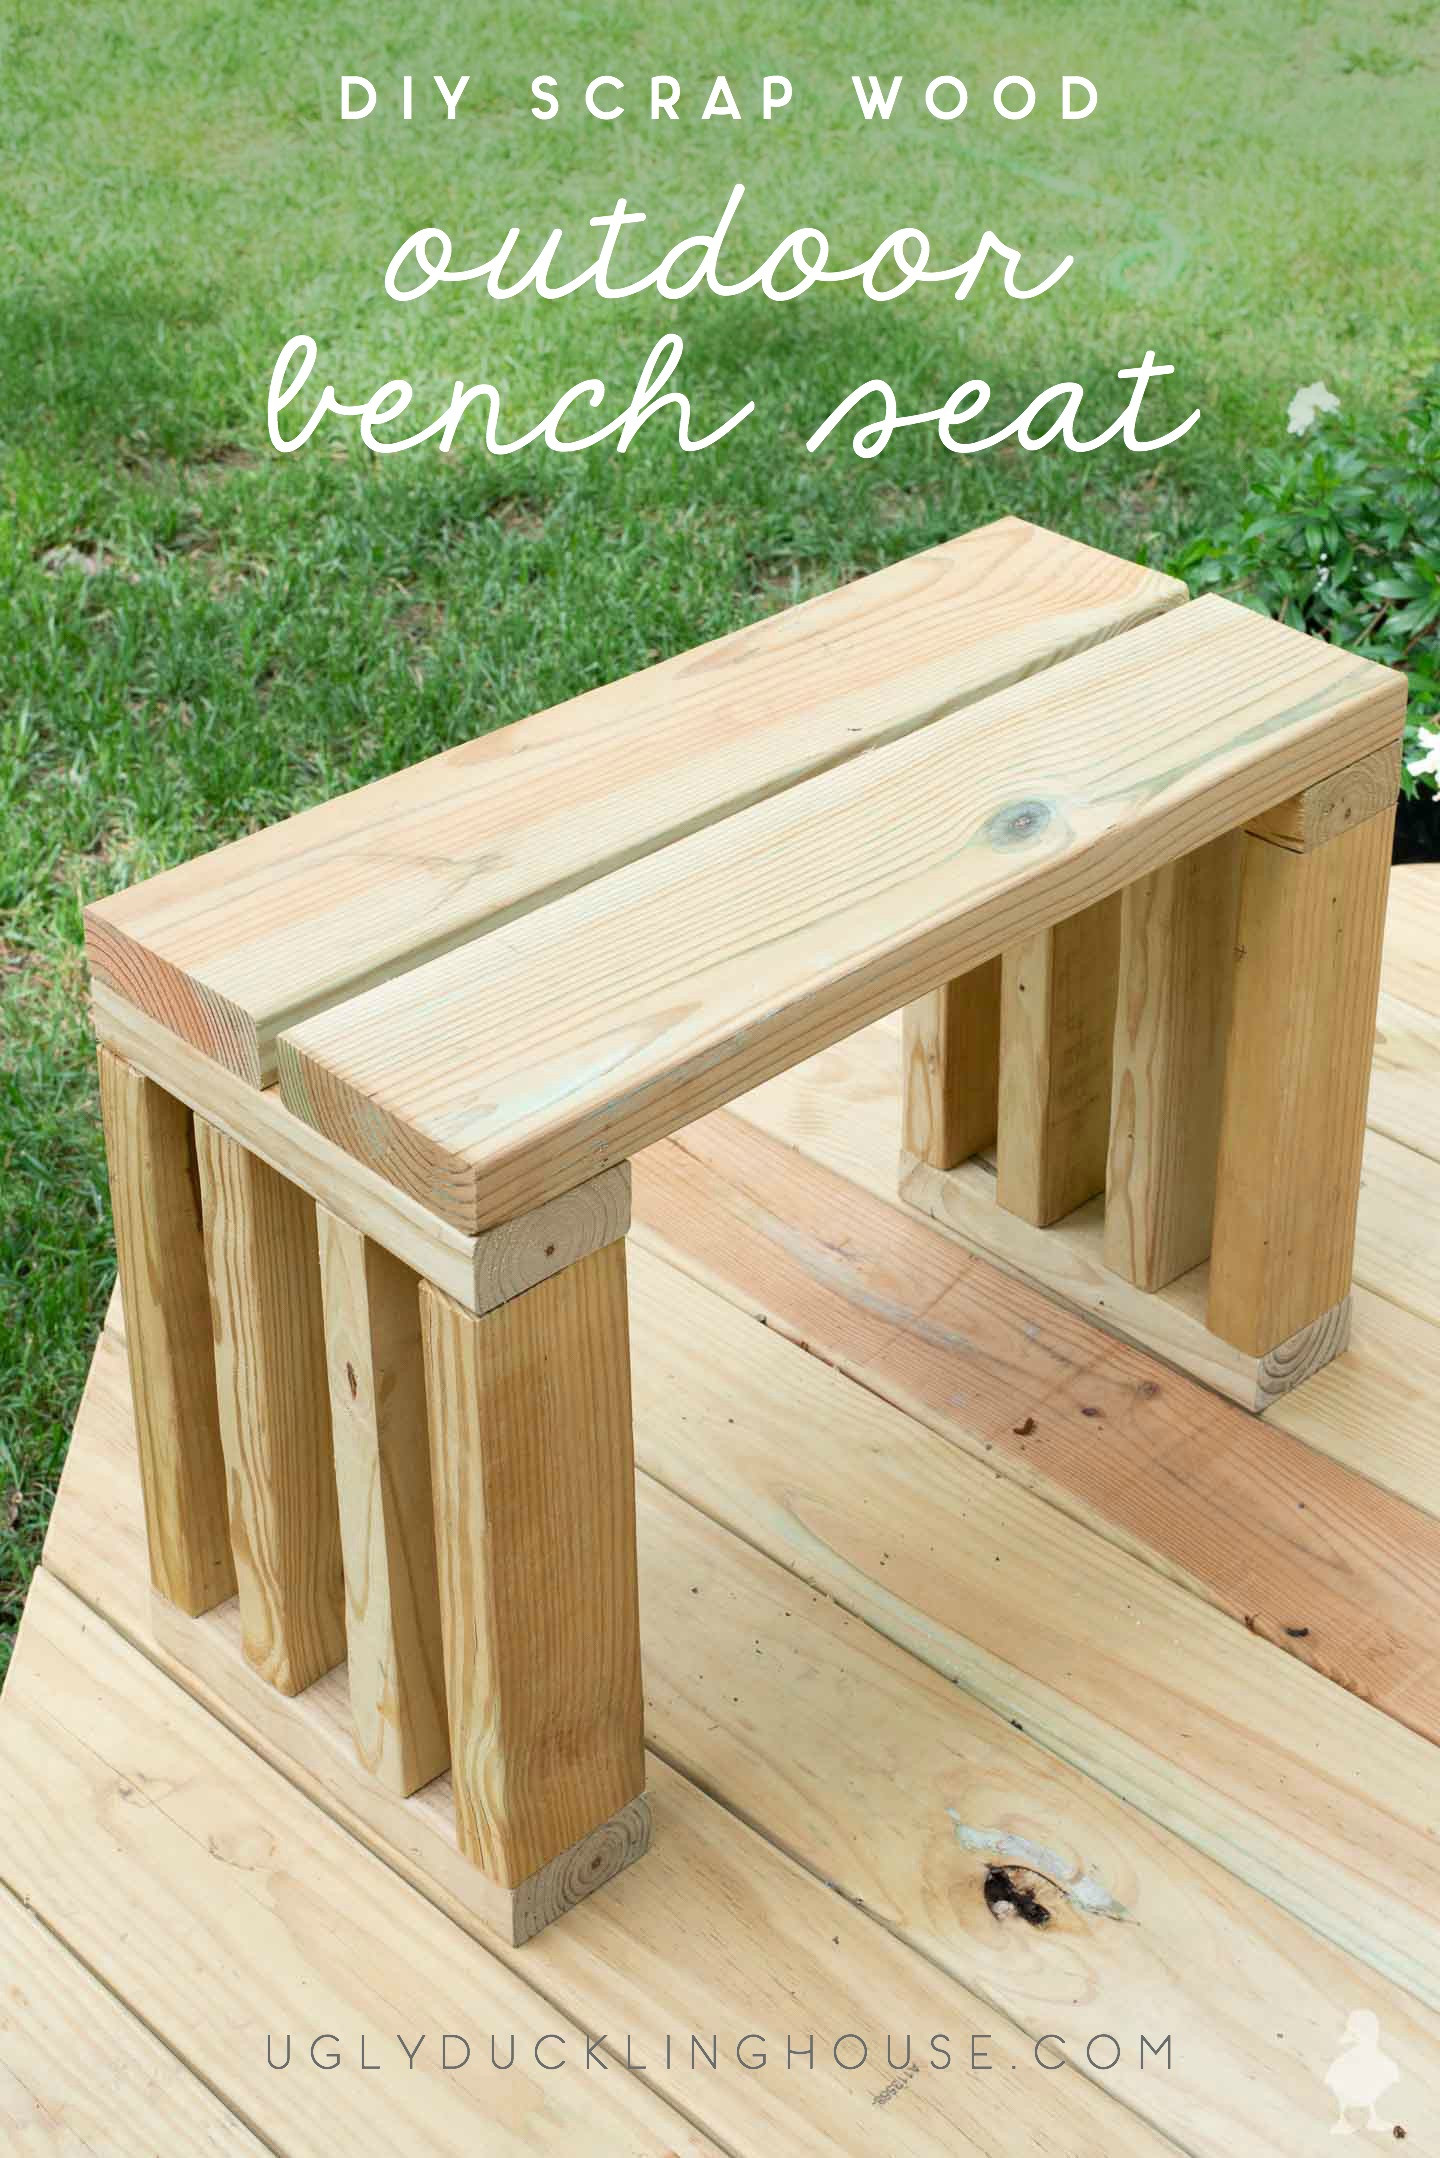 DIY Outdoor Bench Seats
 Scrap Wood Outdoor Bench Seat